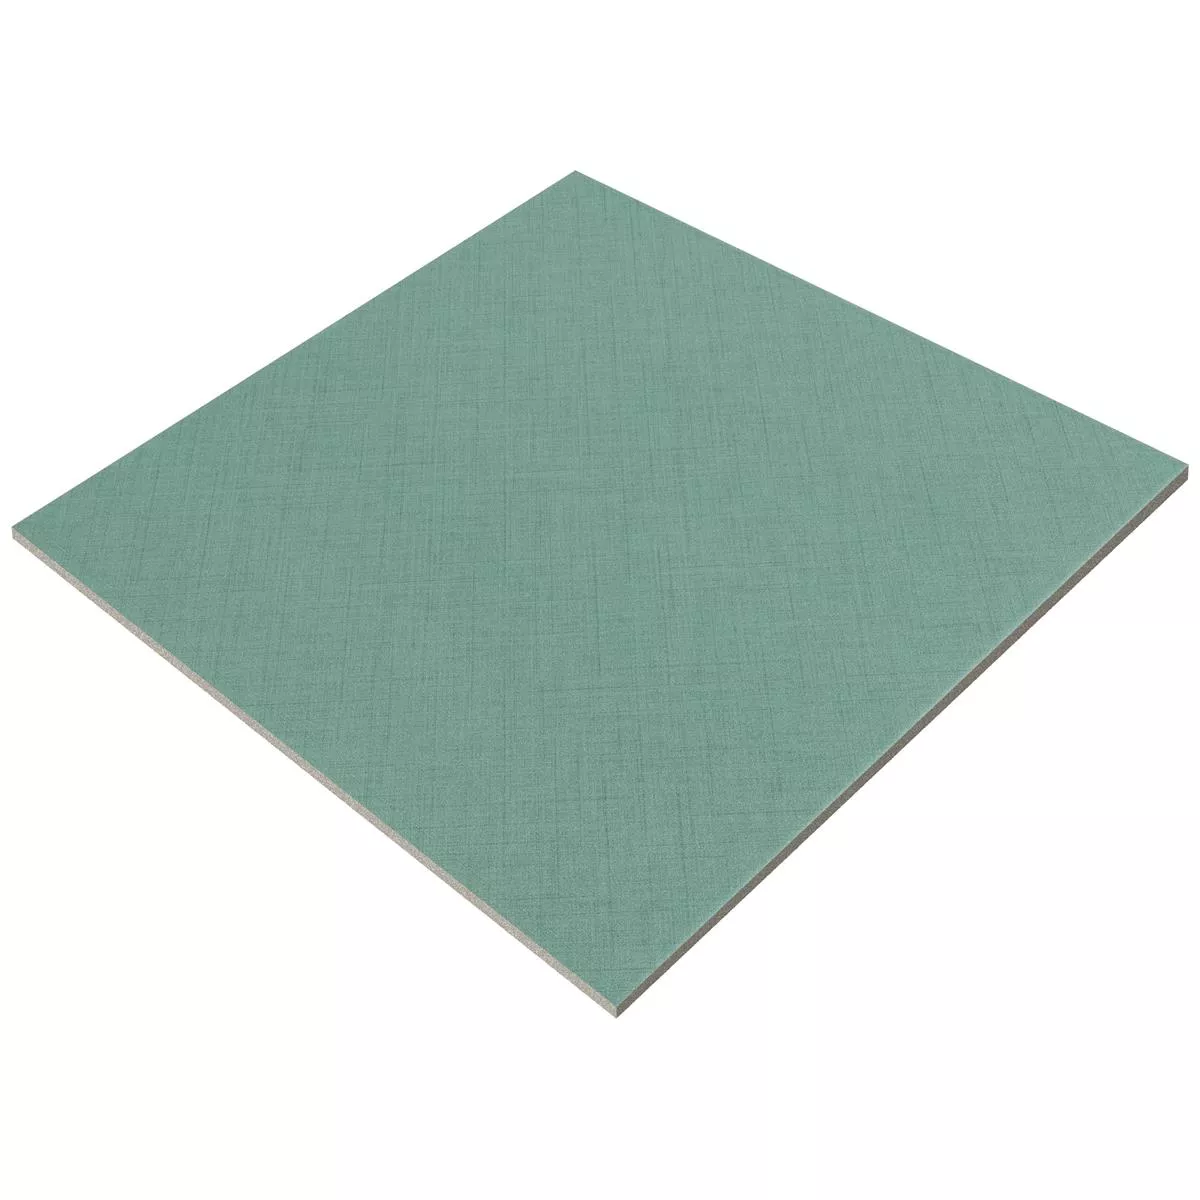 Πλακάκια Δαπέδου Flowerfield 18,5x18,5cm Πράσινος Πλακάκι Bάσης